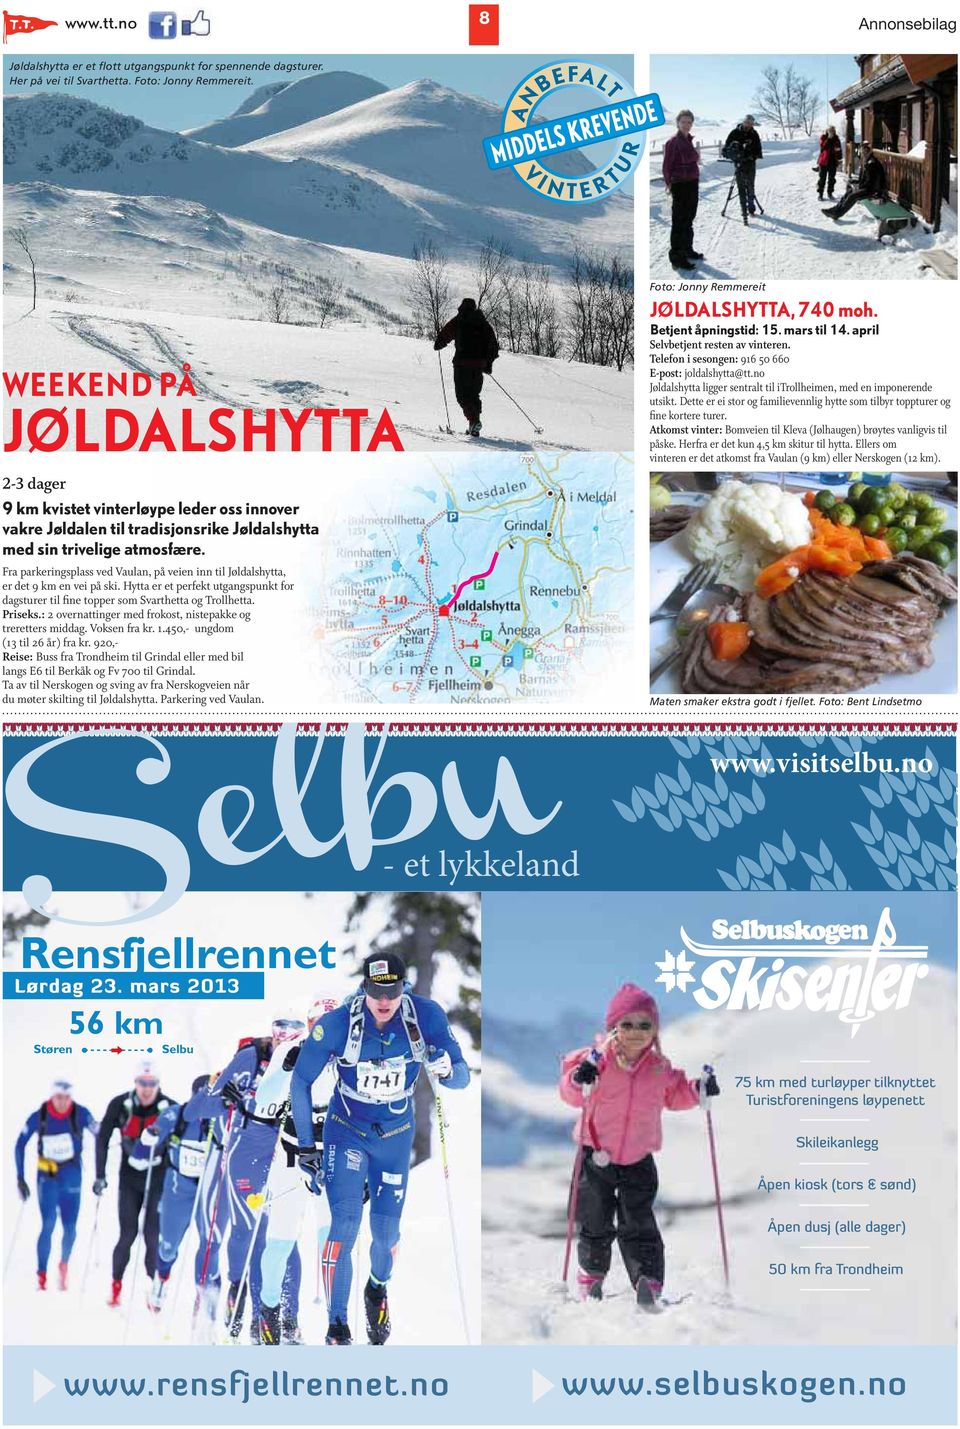 Fra parkeringsplass ved Vaulan, på veien inn til Jøldalshytta, er det 9 km en vei på ski. Hytta er et perfekt utgangspunkt for dagsturer til fine topper som Svarthetta og Trollhetta. Priseks.